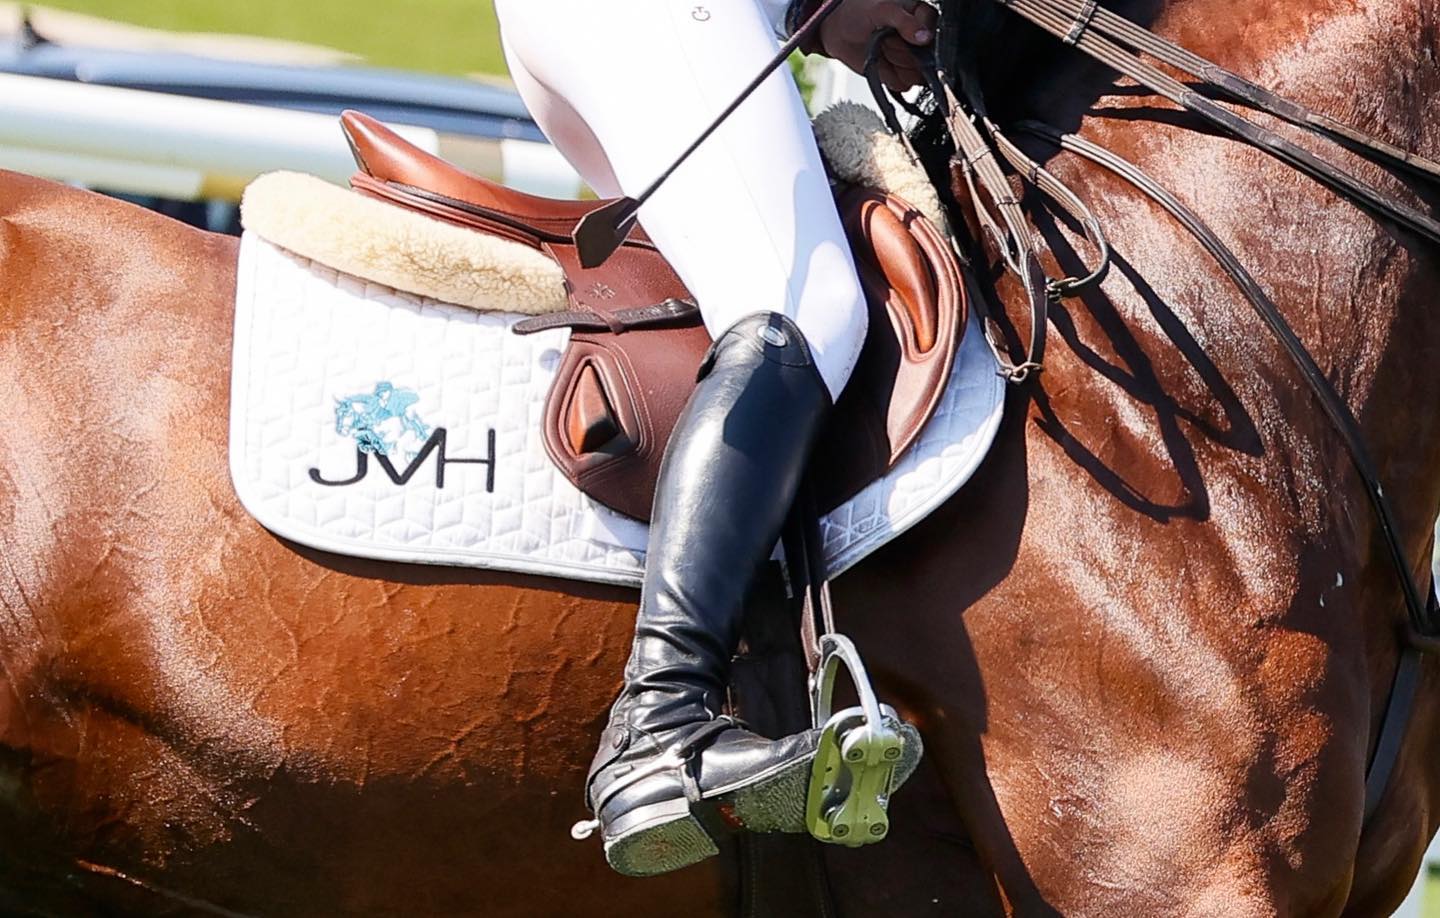 JV Horses maakt zich in juli op voor drie weken topsport in Wuustwezel